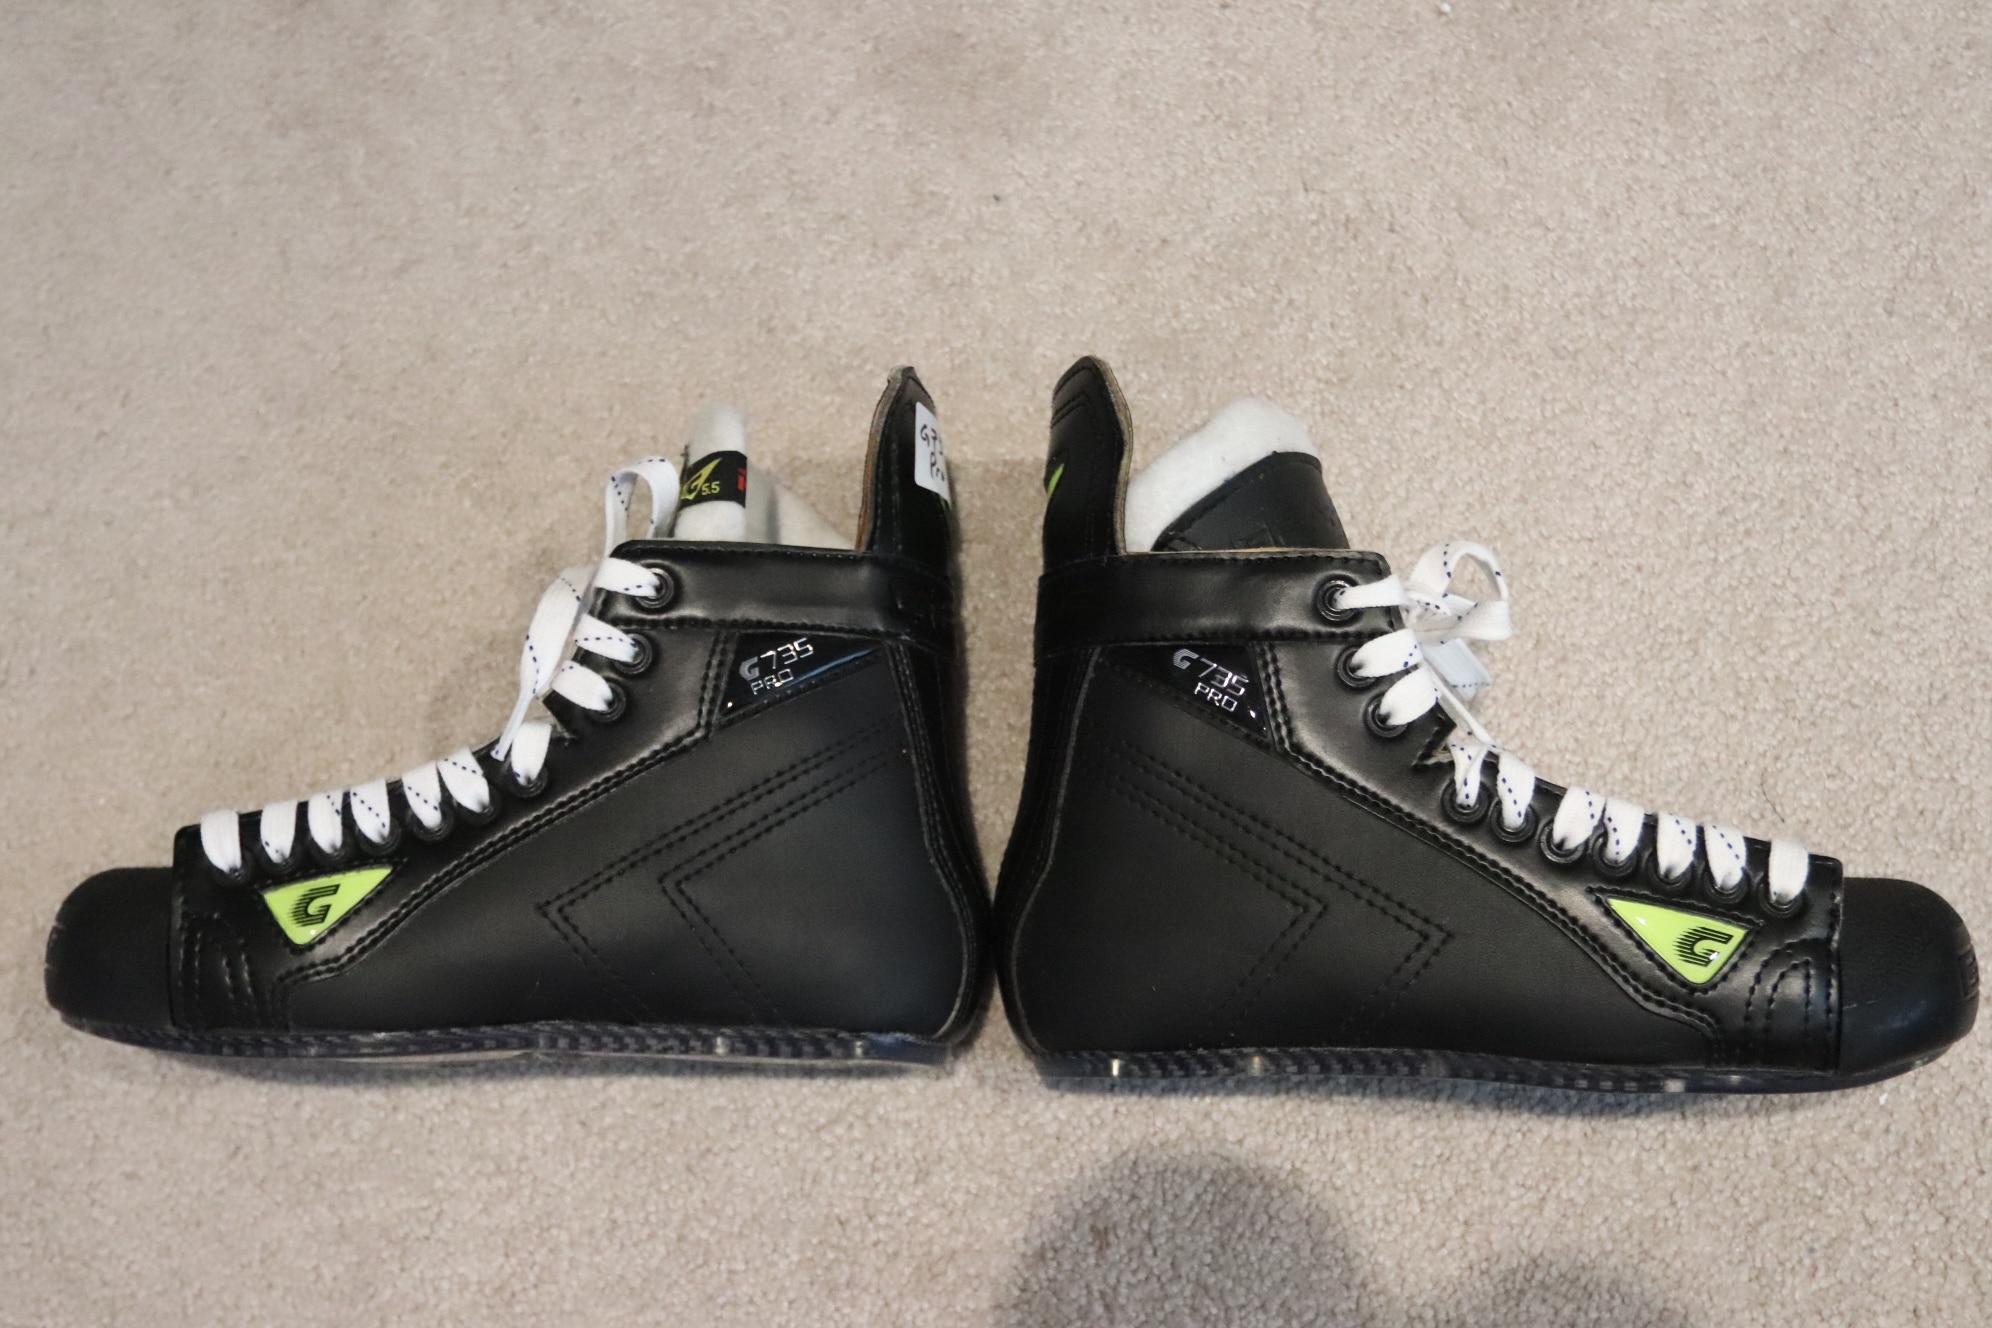 Graf G735 Pro Hockey Skates - Size 5.5R - #81